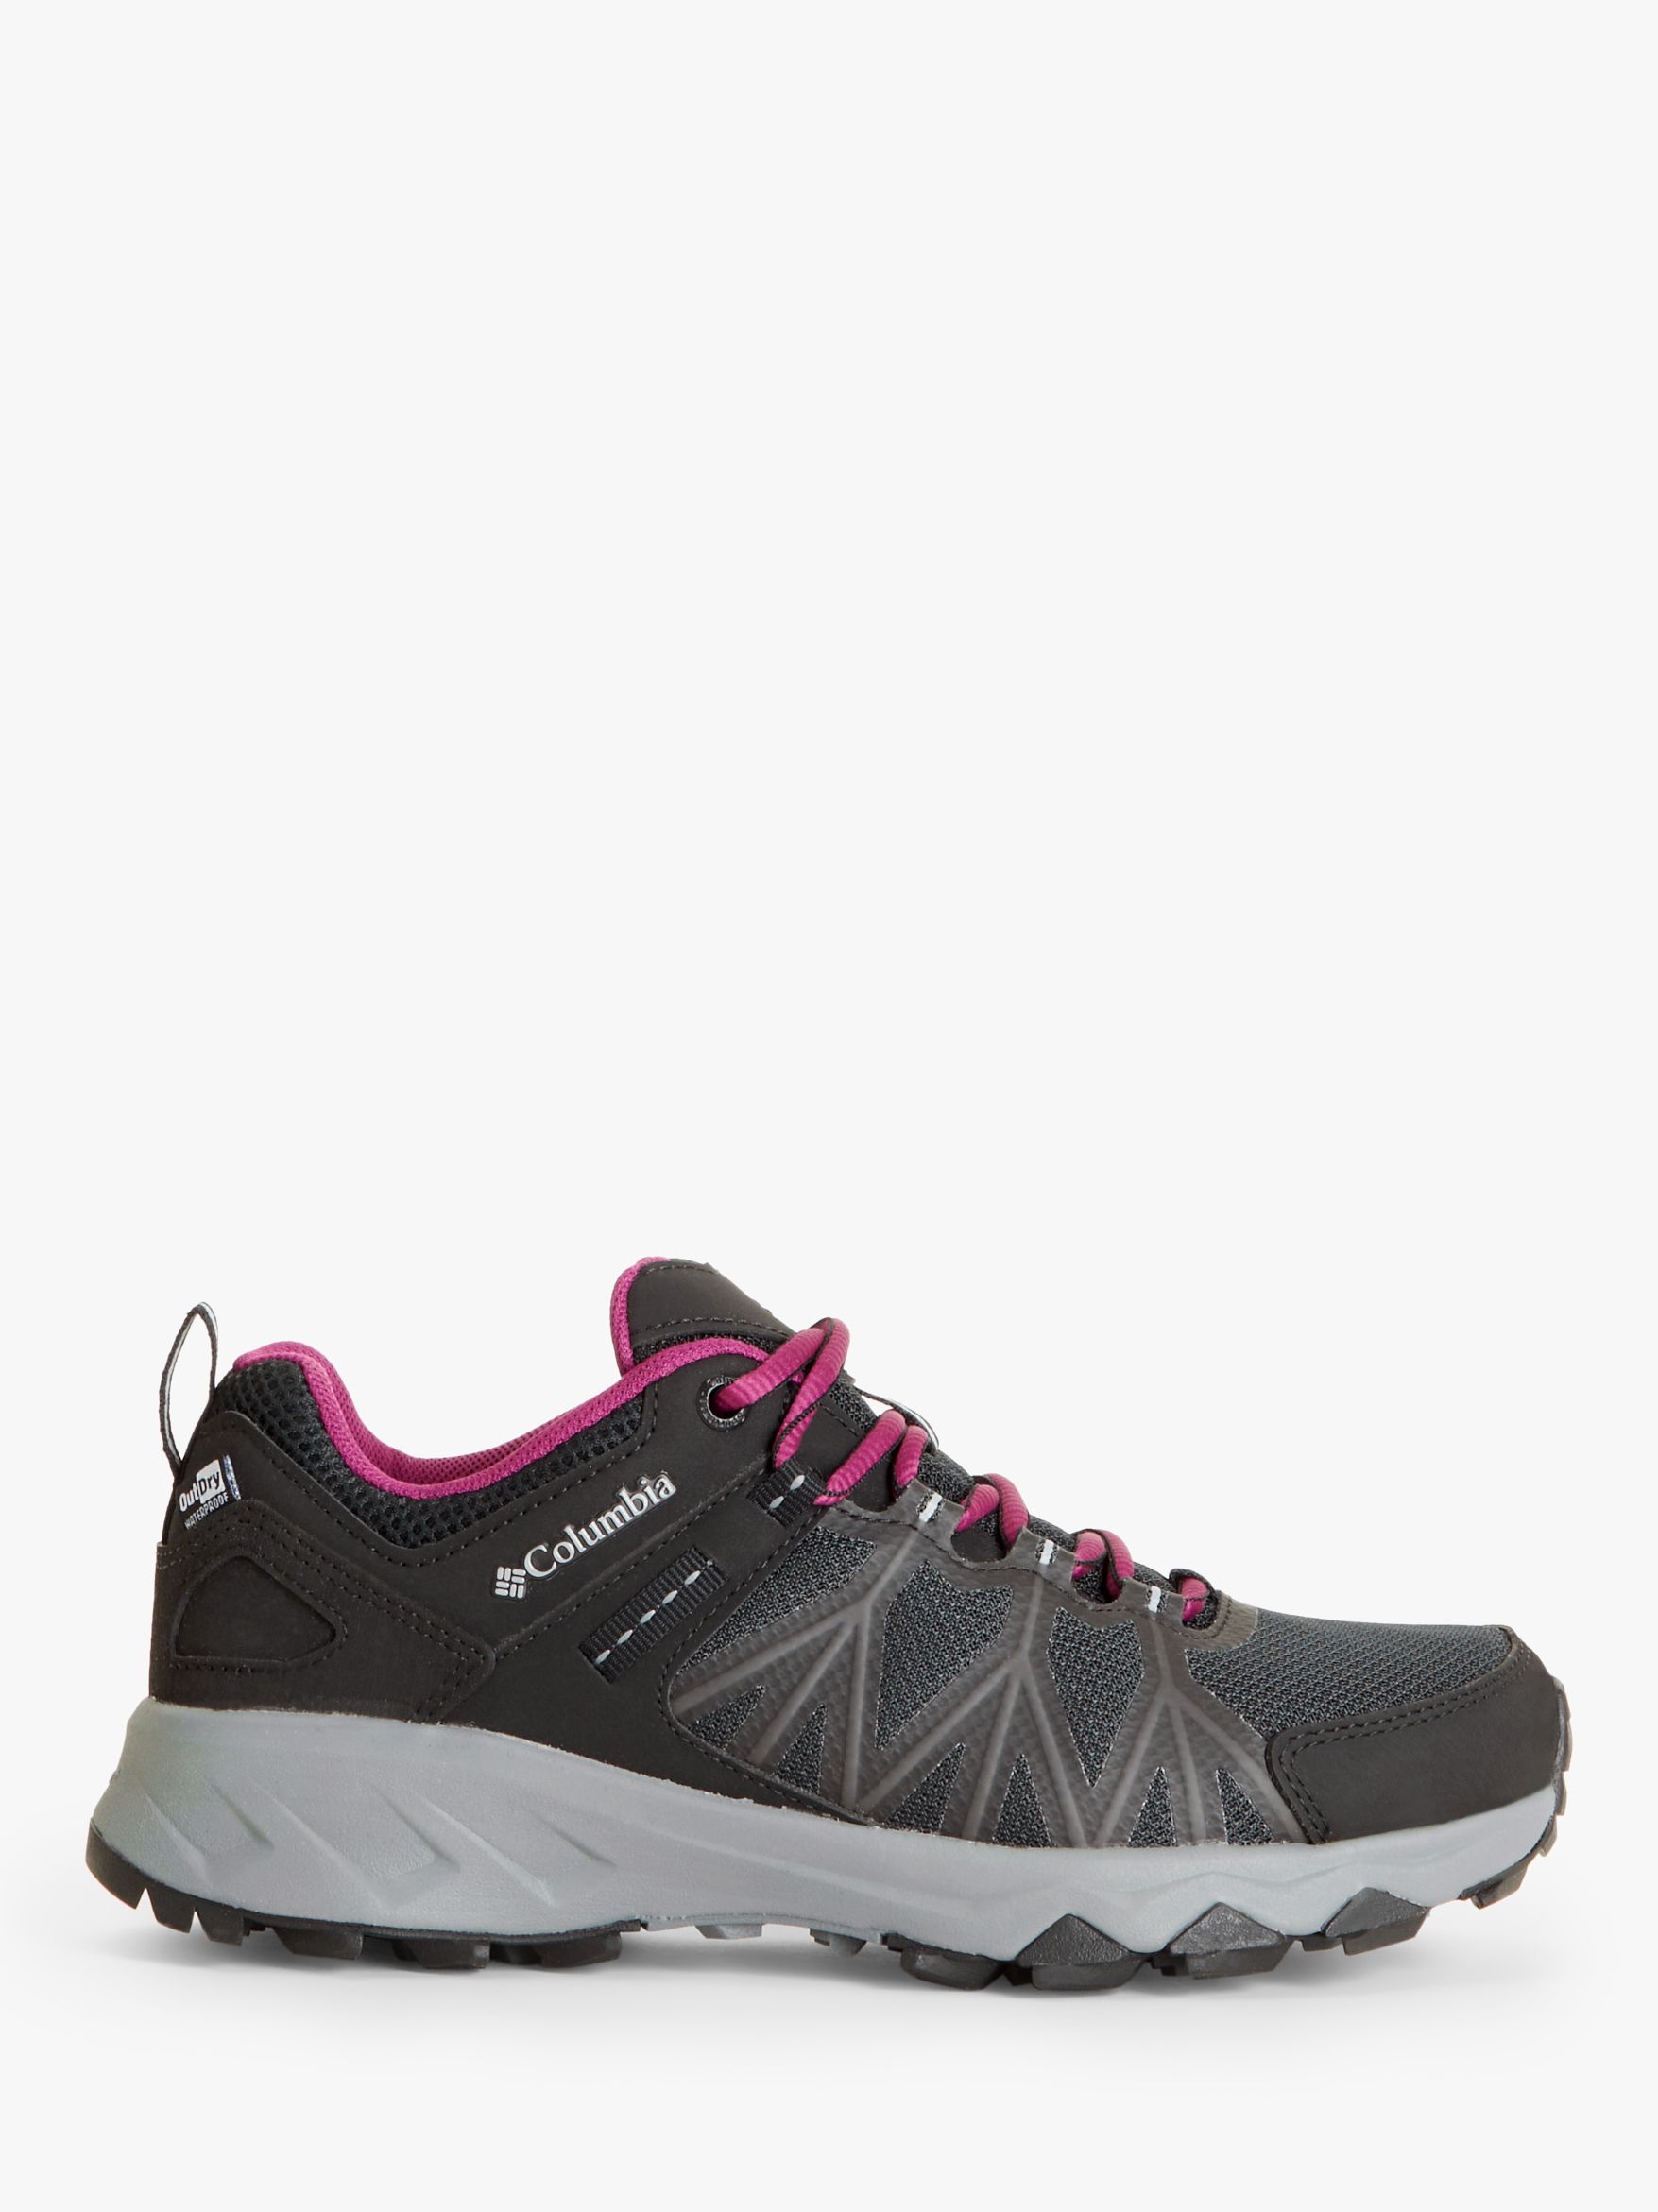 Columbia Women's Peakfreak II OutDry Waterproof Hiking Shoes